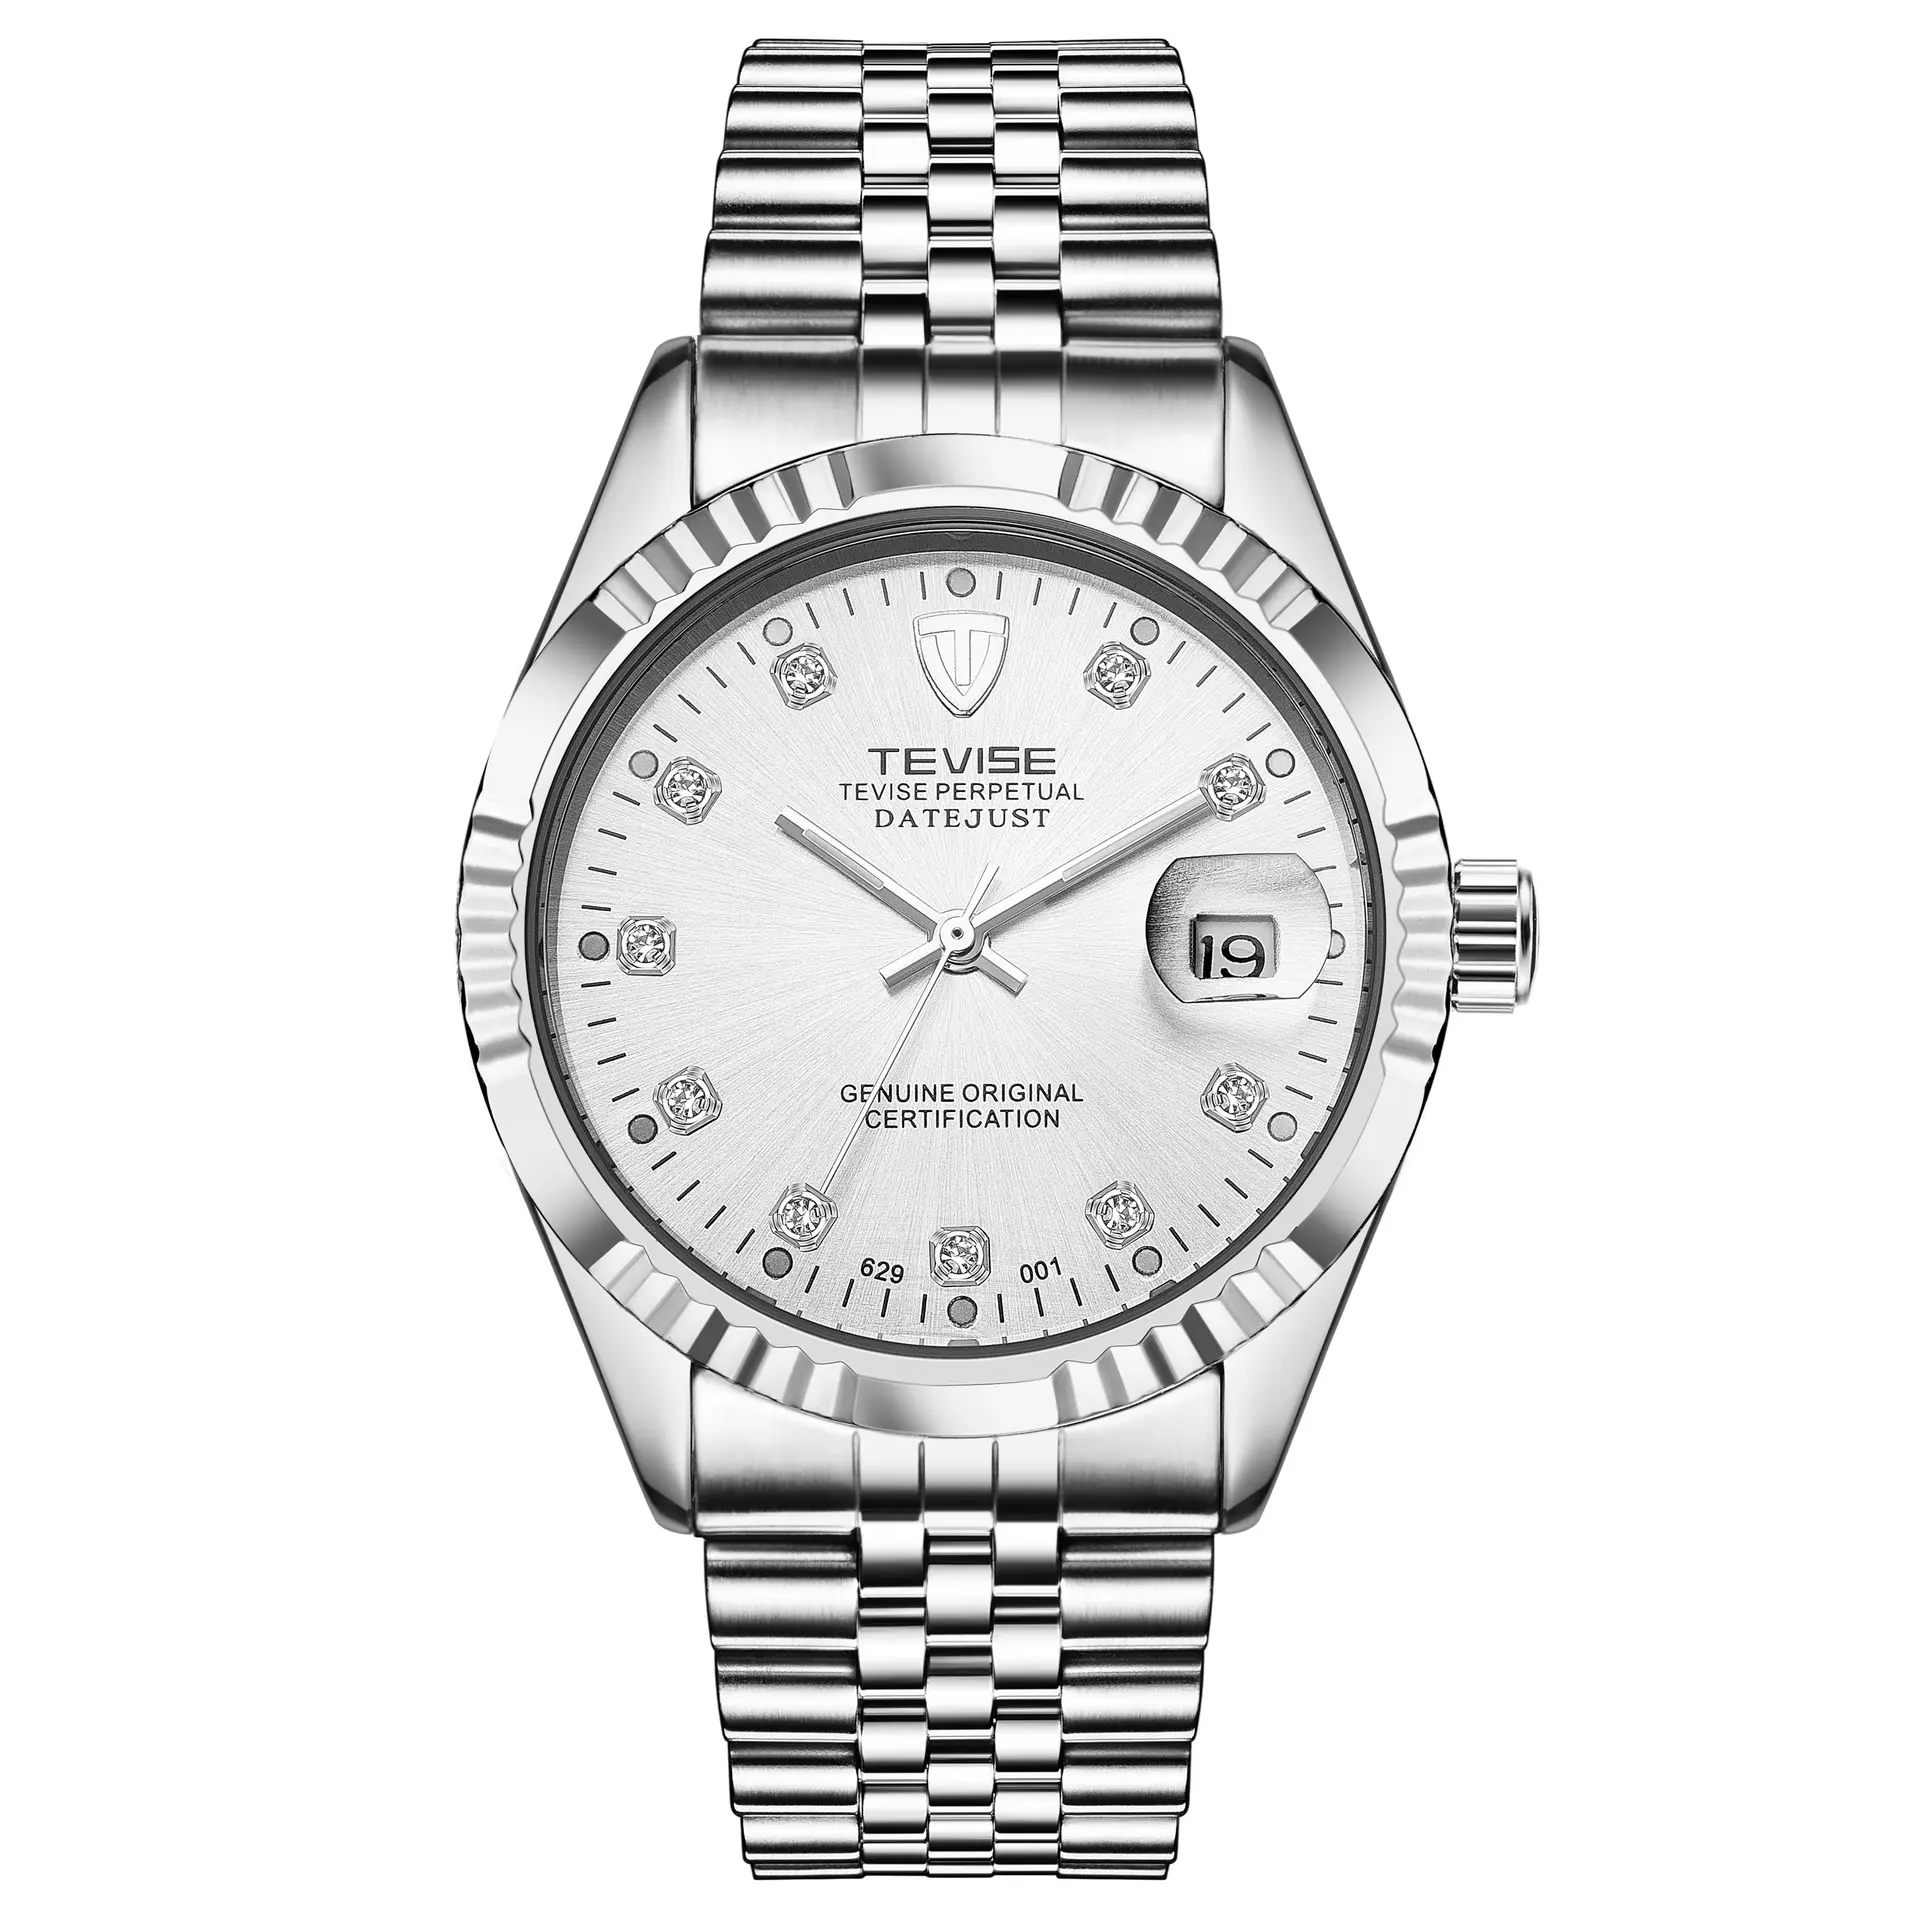 Bon prix quartz avon montres de marque montres pour hommes nouveau design montre code marque vente entière